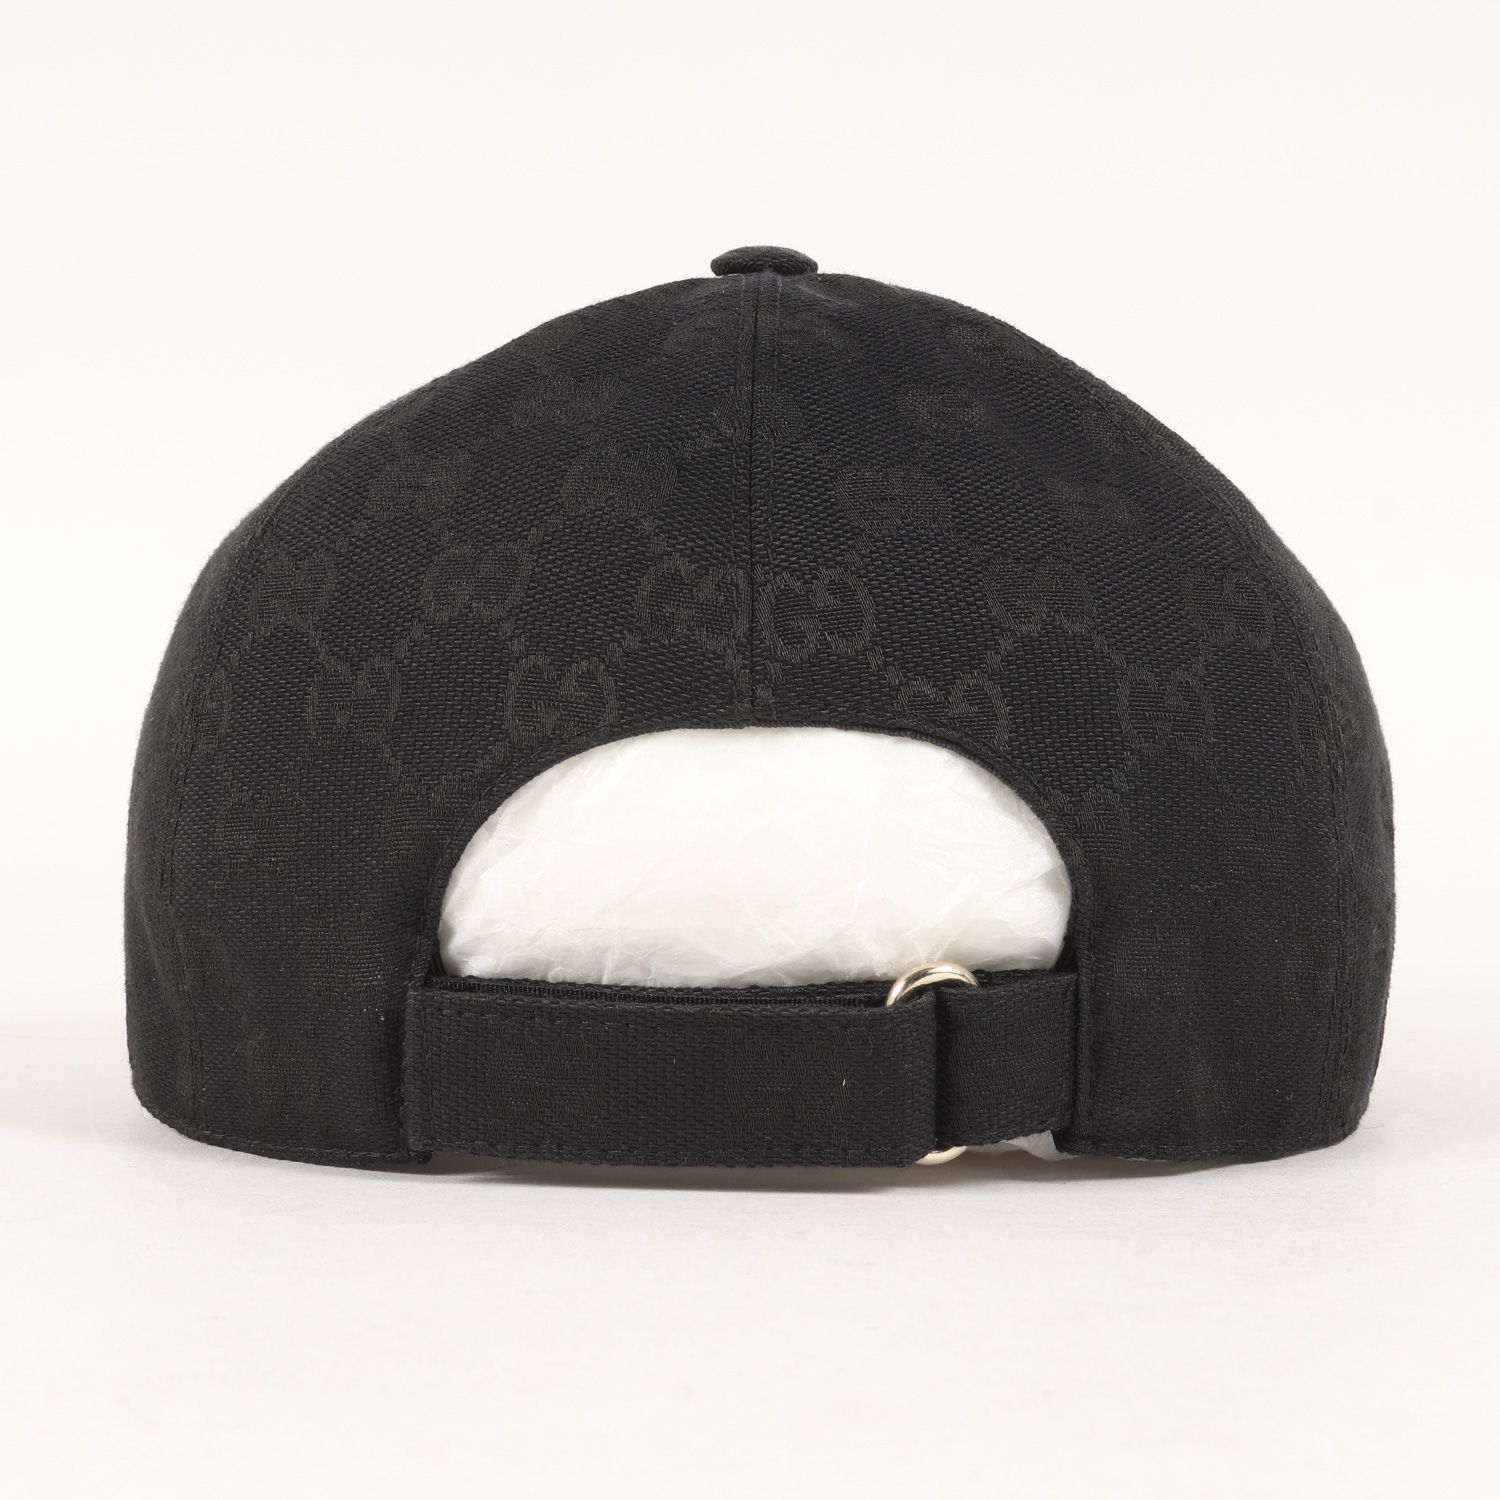 美品 GUCCI グッチ キャップ サイズ:L(59cm) レザーワッペン GG キャンバス ベースボール キャップ ‎576253 4HG53  現行モデル ブラック 黒 イタリア製 ブランド 帽子